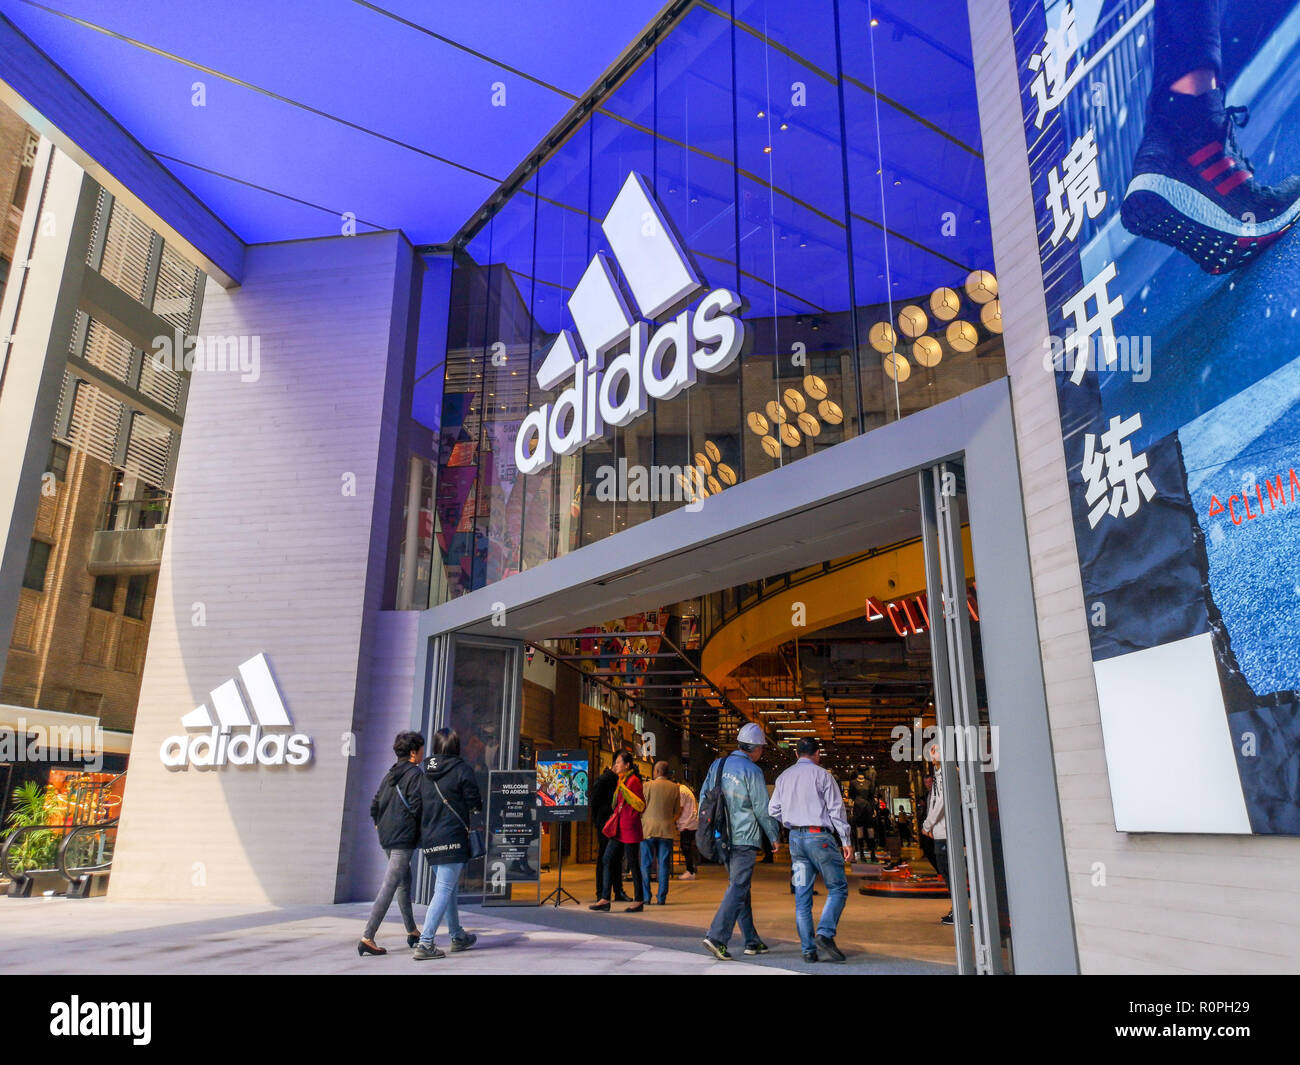 Adidas China Office Shanghai Italia Discount, 56% OFF | empow-her.com